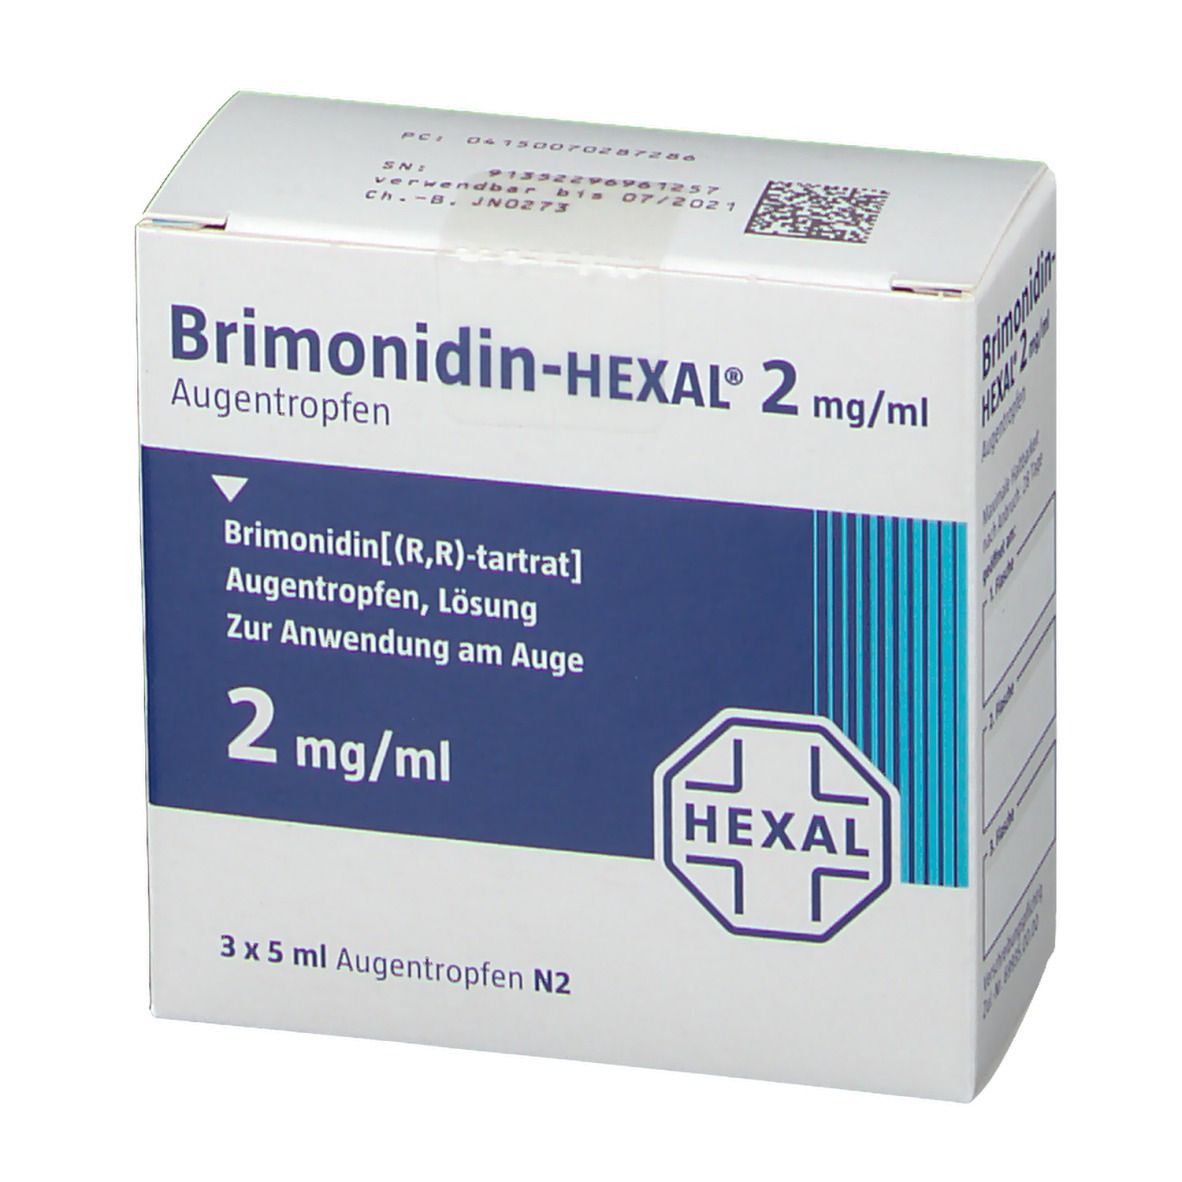 Brimonidin HEXAL® 2 mg/ml Augentropfen